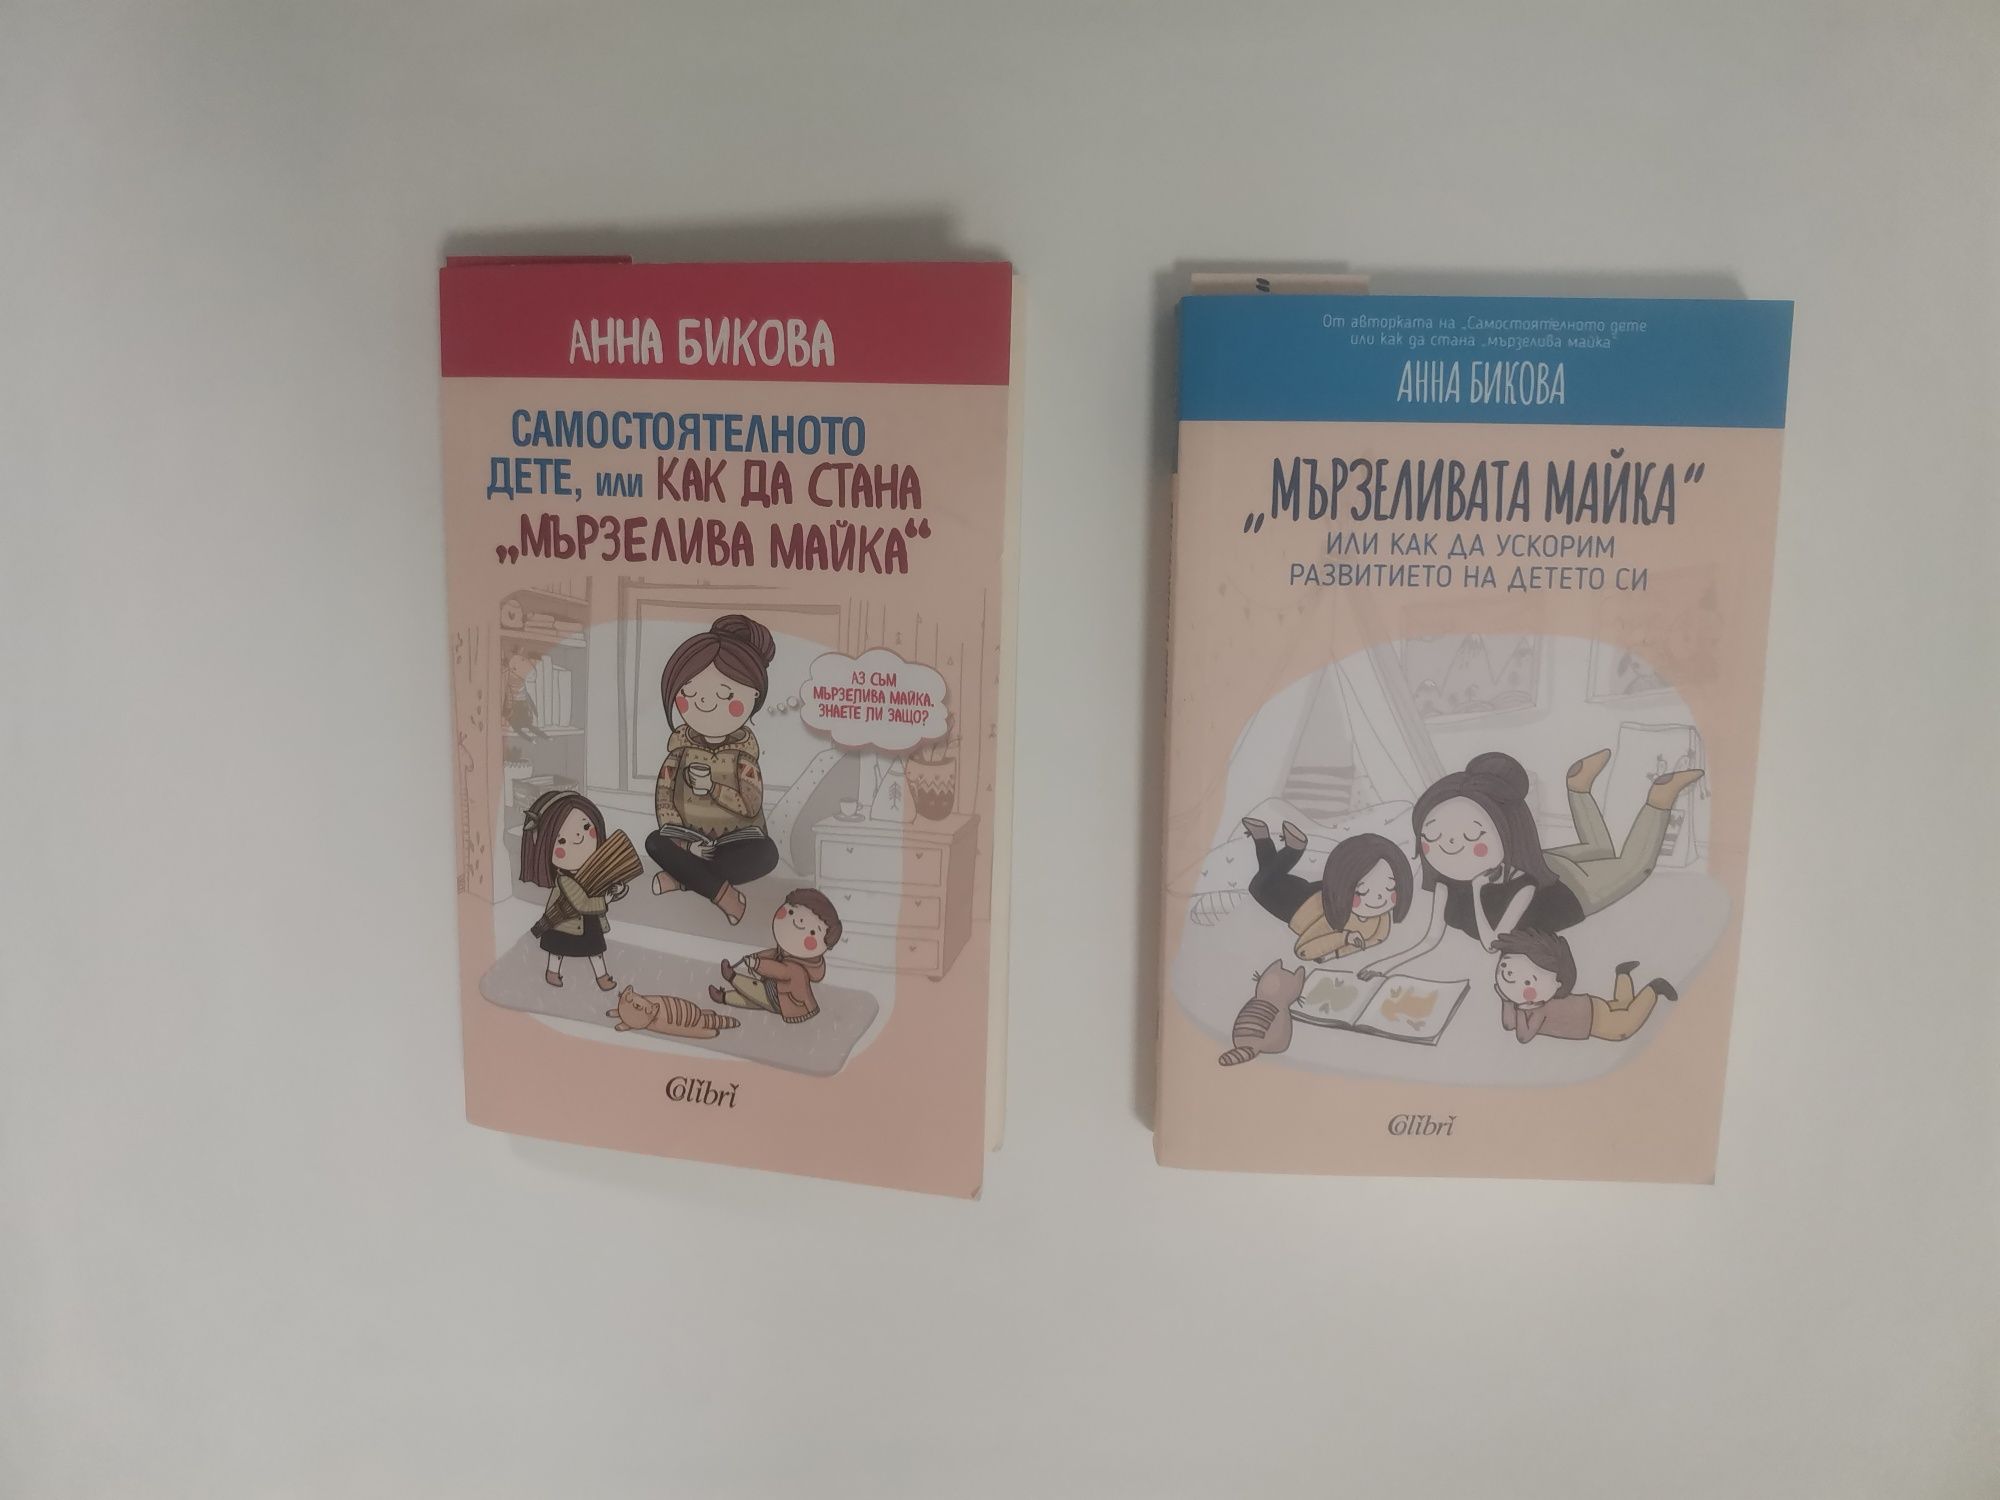 Книги - "Мързеливата майка" и "Как да стана Мързелива майка"